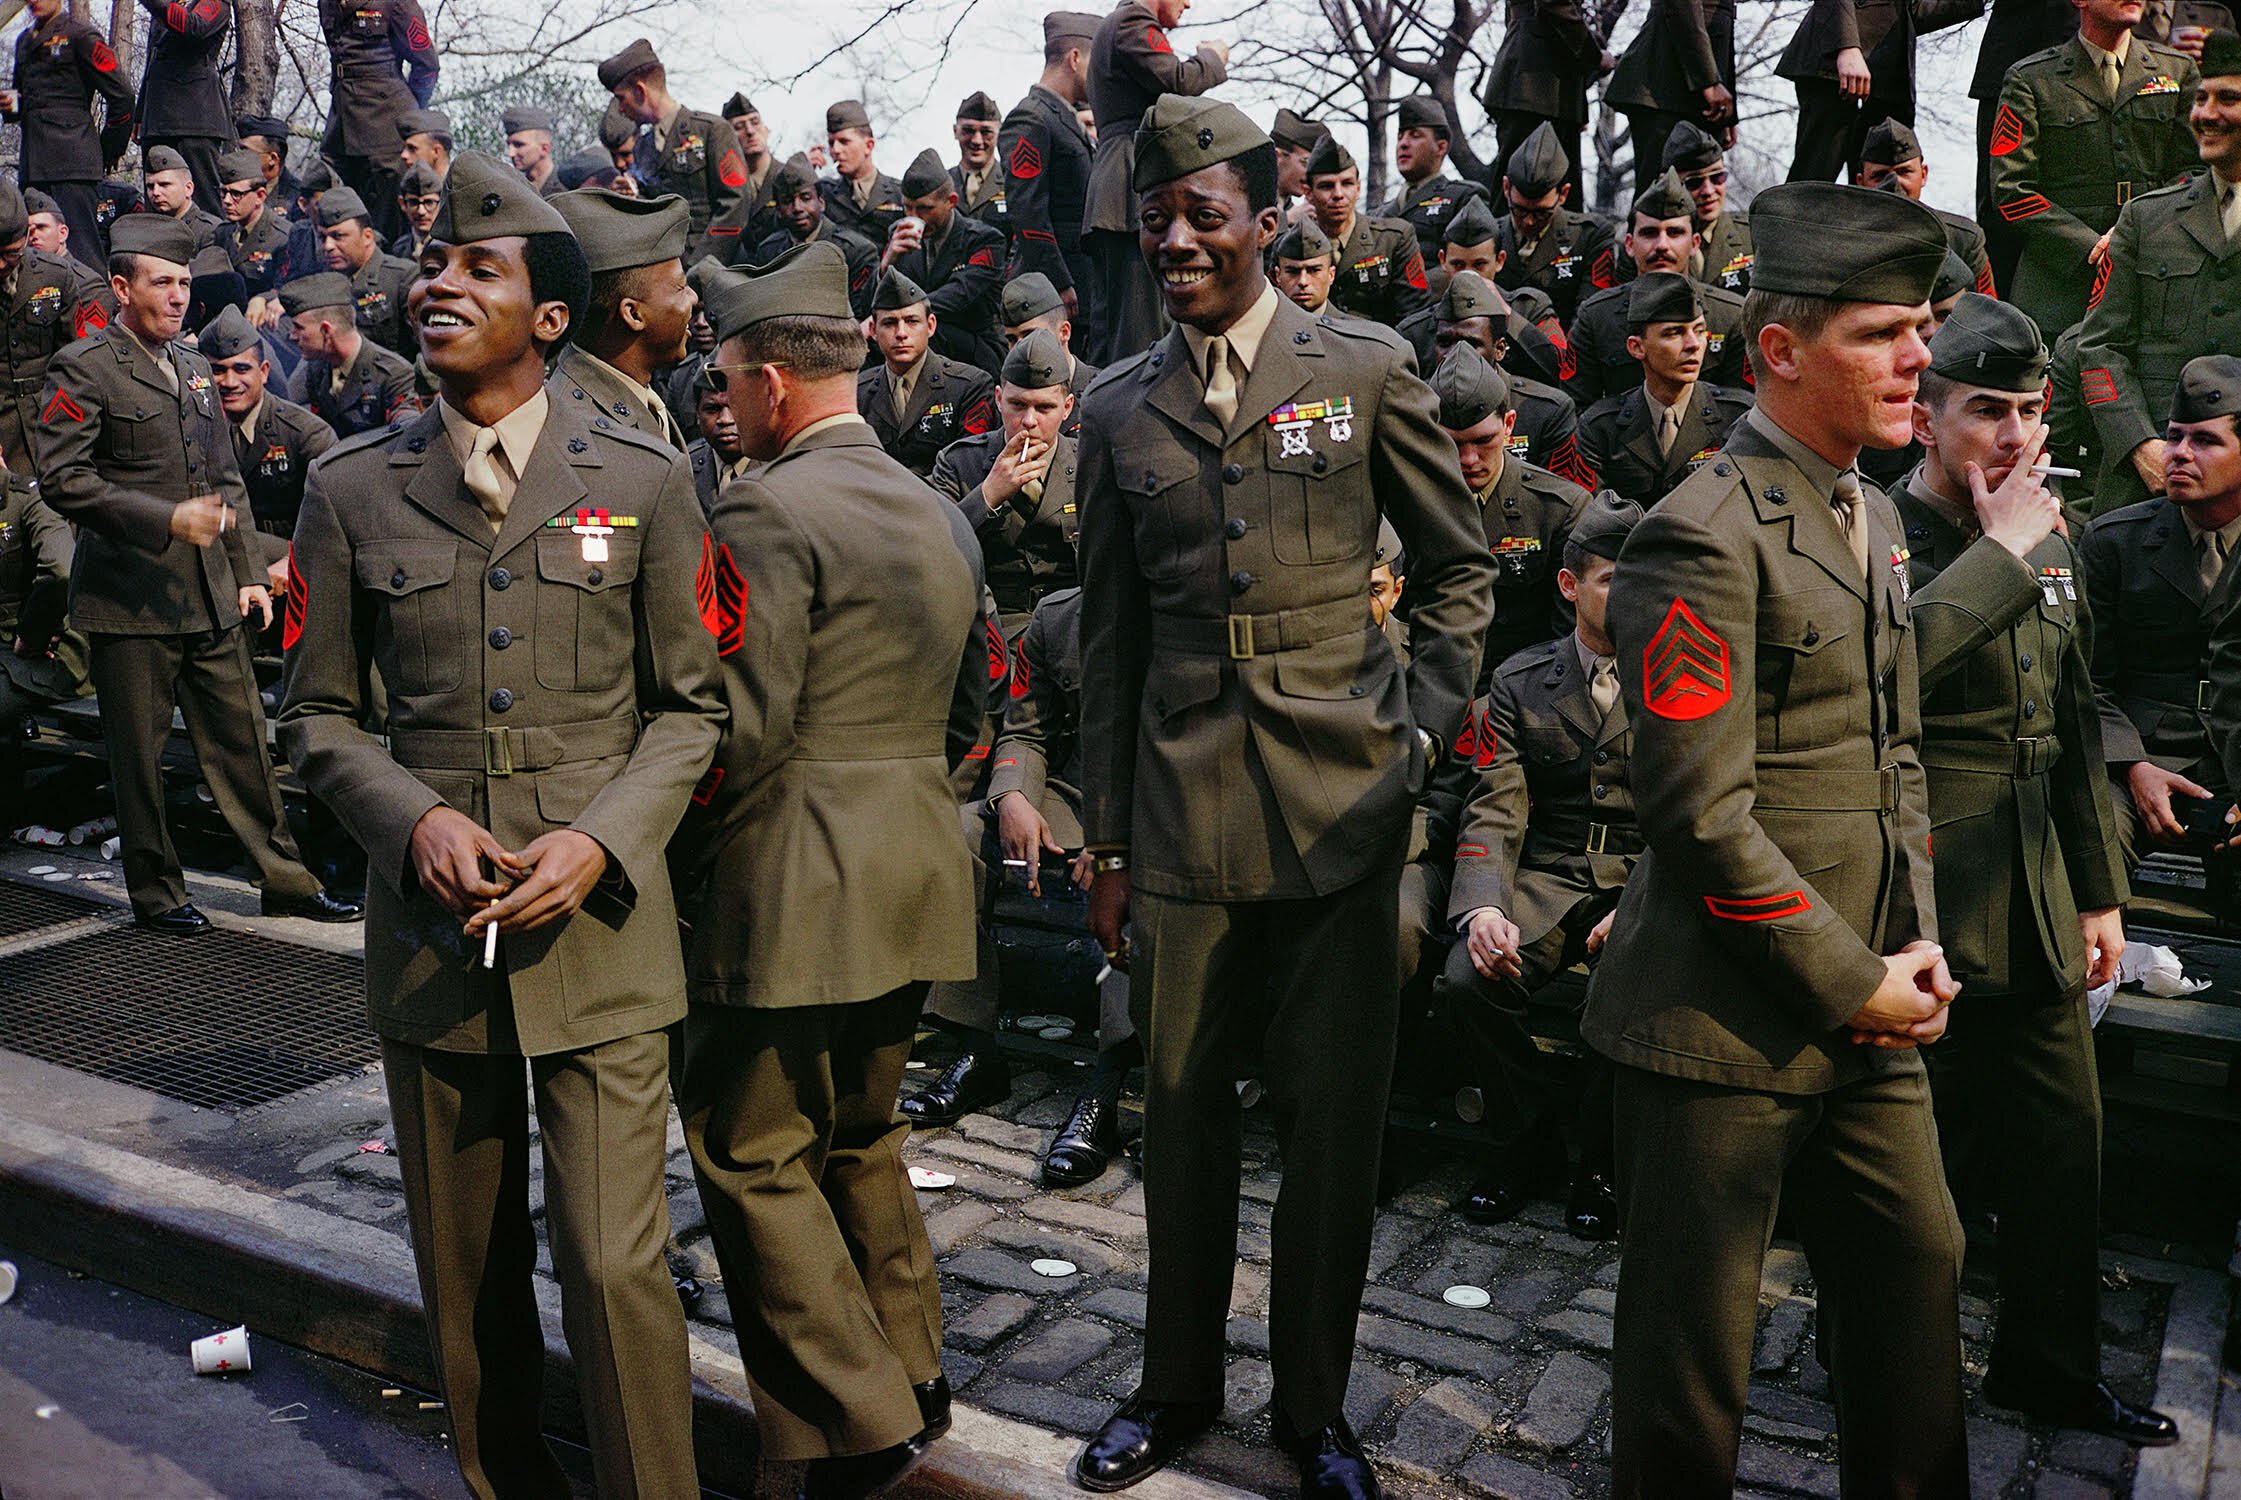 “Vietnam Veteran’s Parade, New York City 1973” by Mitch Epstein |  Leica Rangefinder, 35mm Kodachrome Film